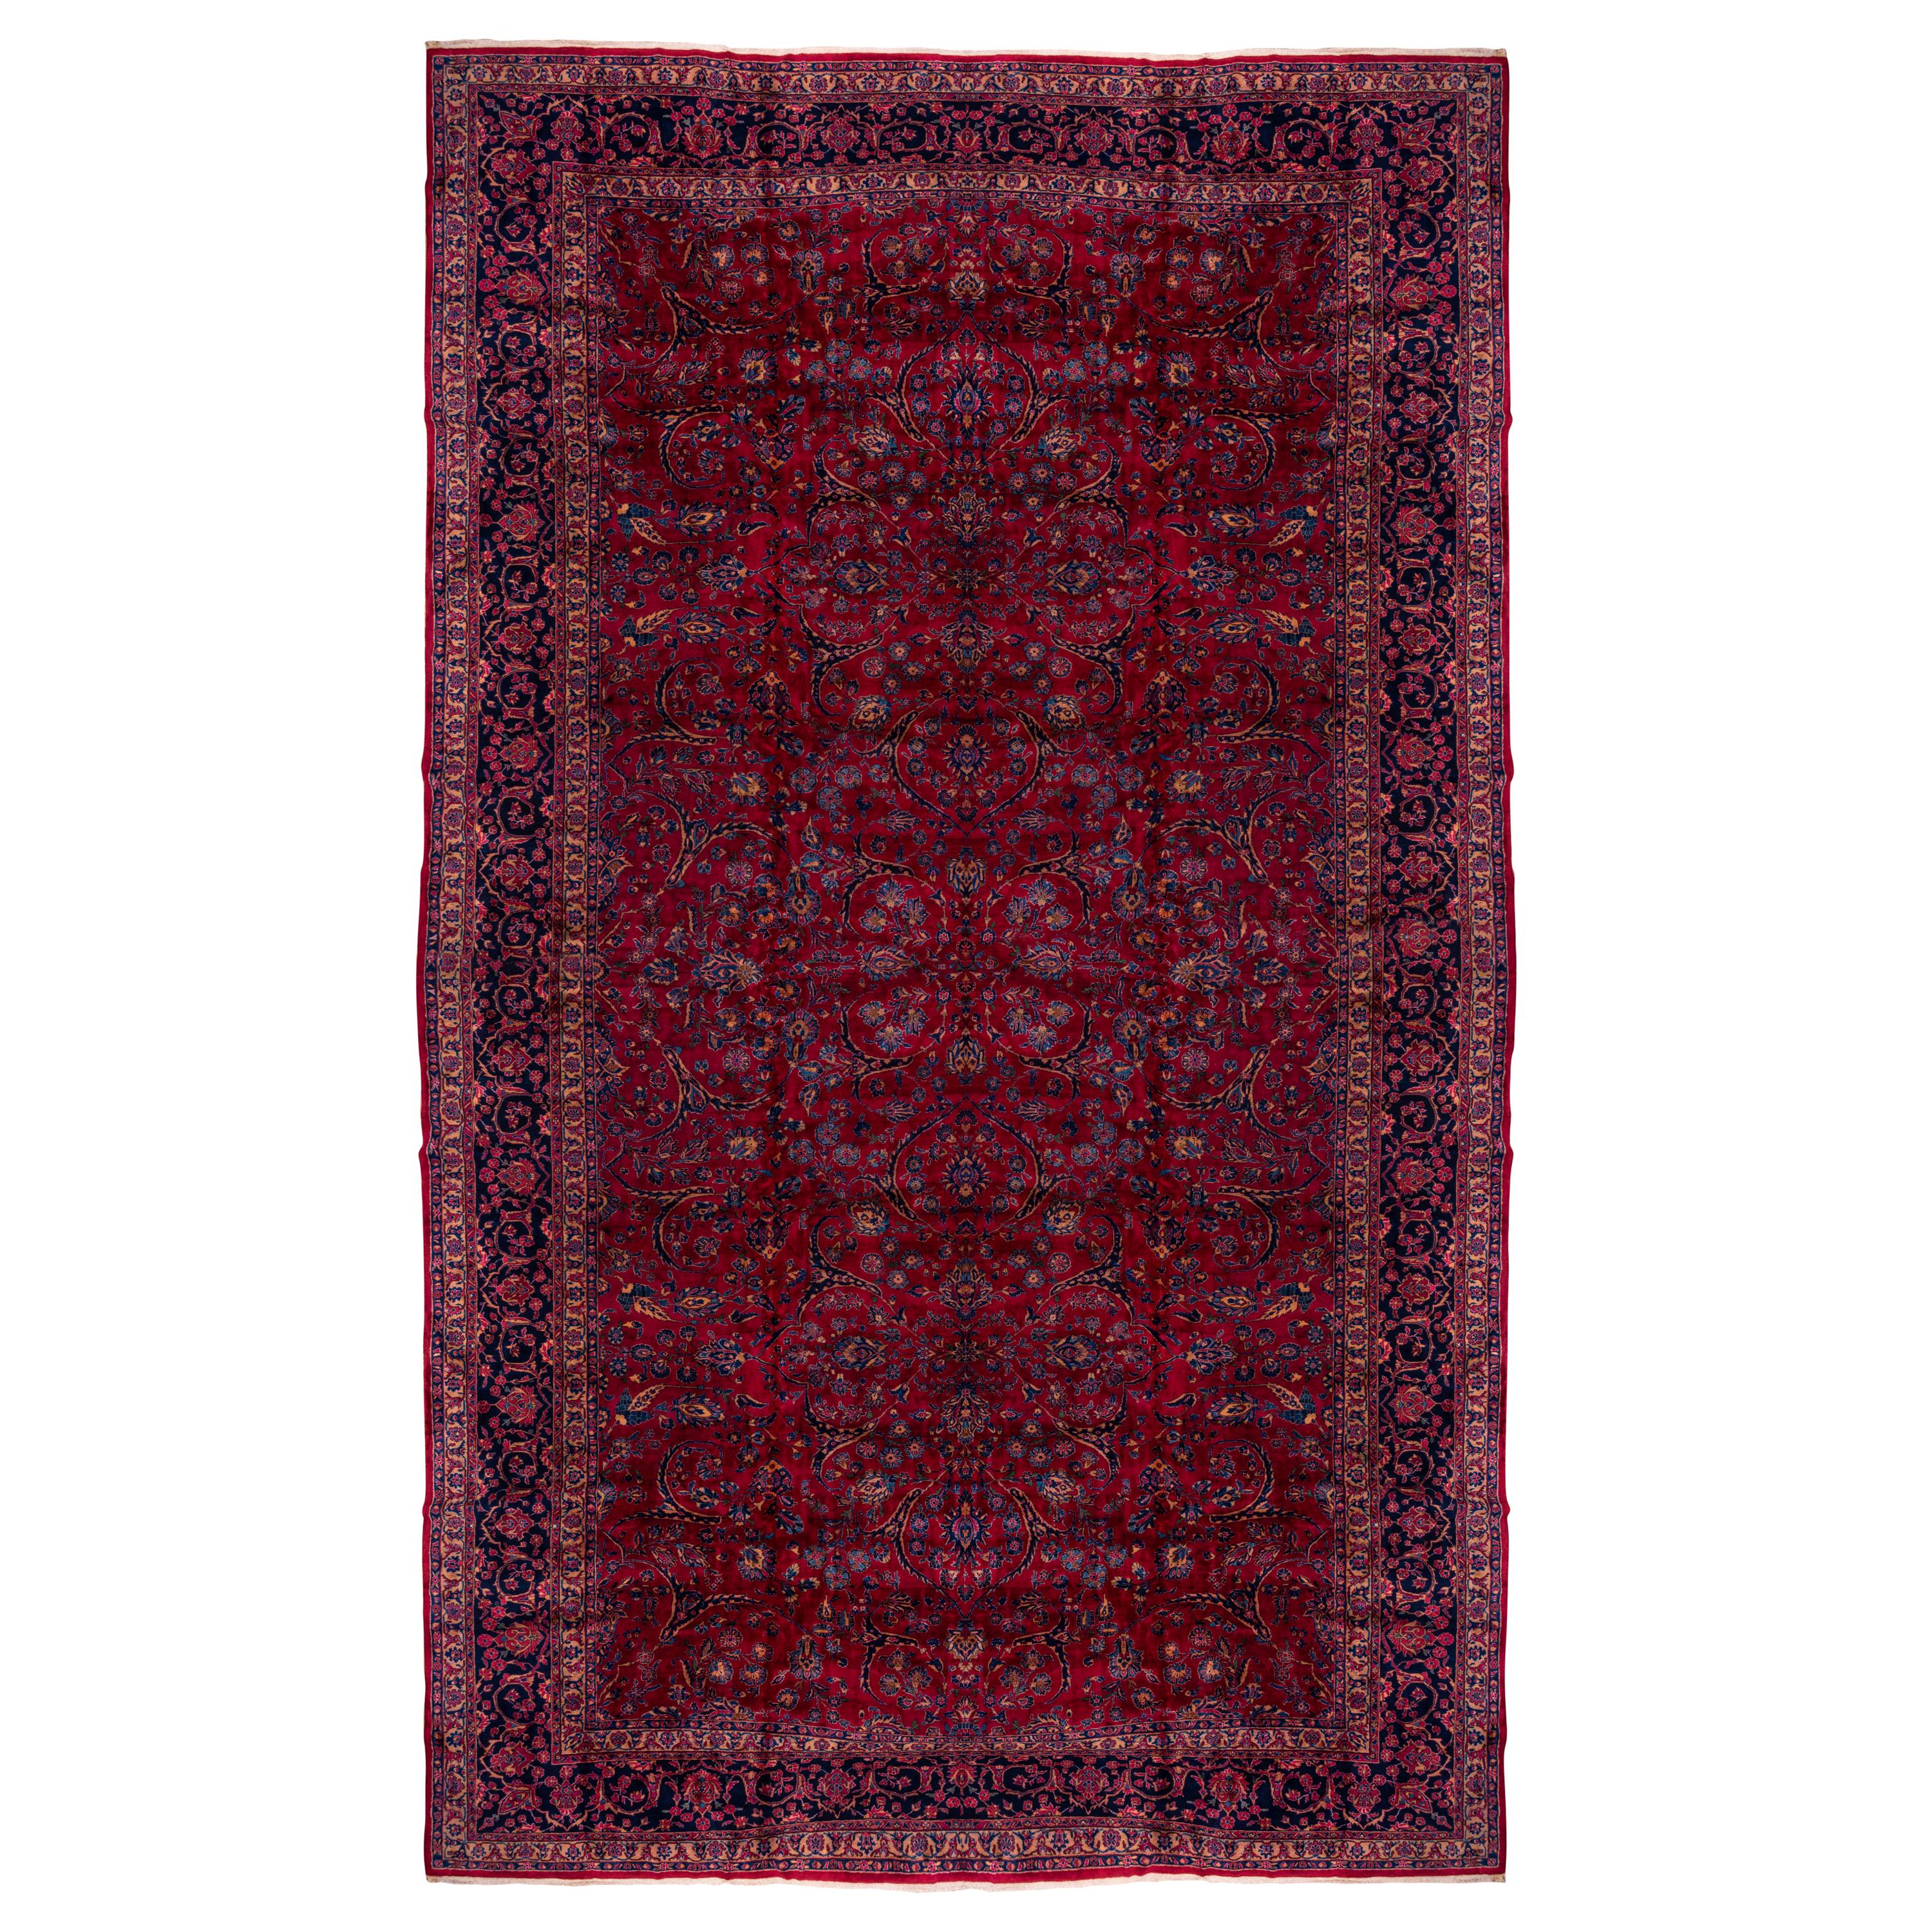 Massive Antique Mohajeran Sarouk Mansion Carpet, Red Allover Filed, circa 1920s